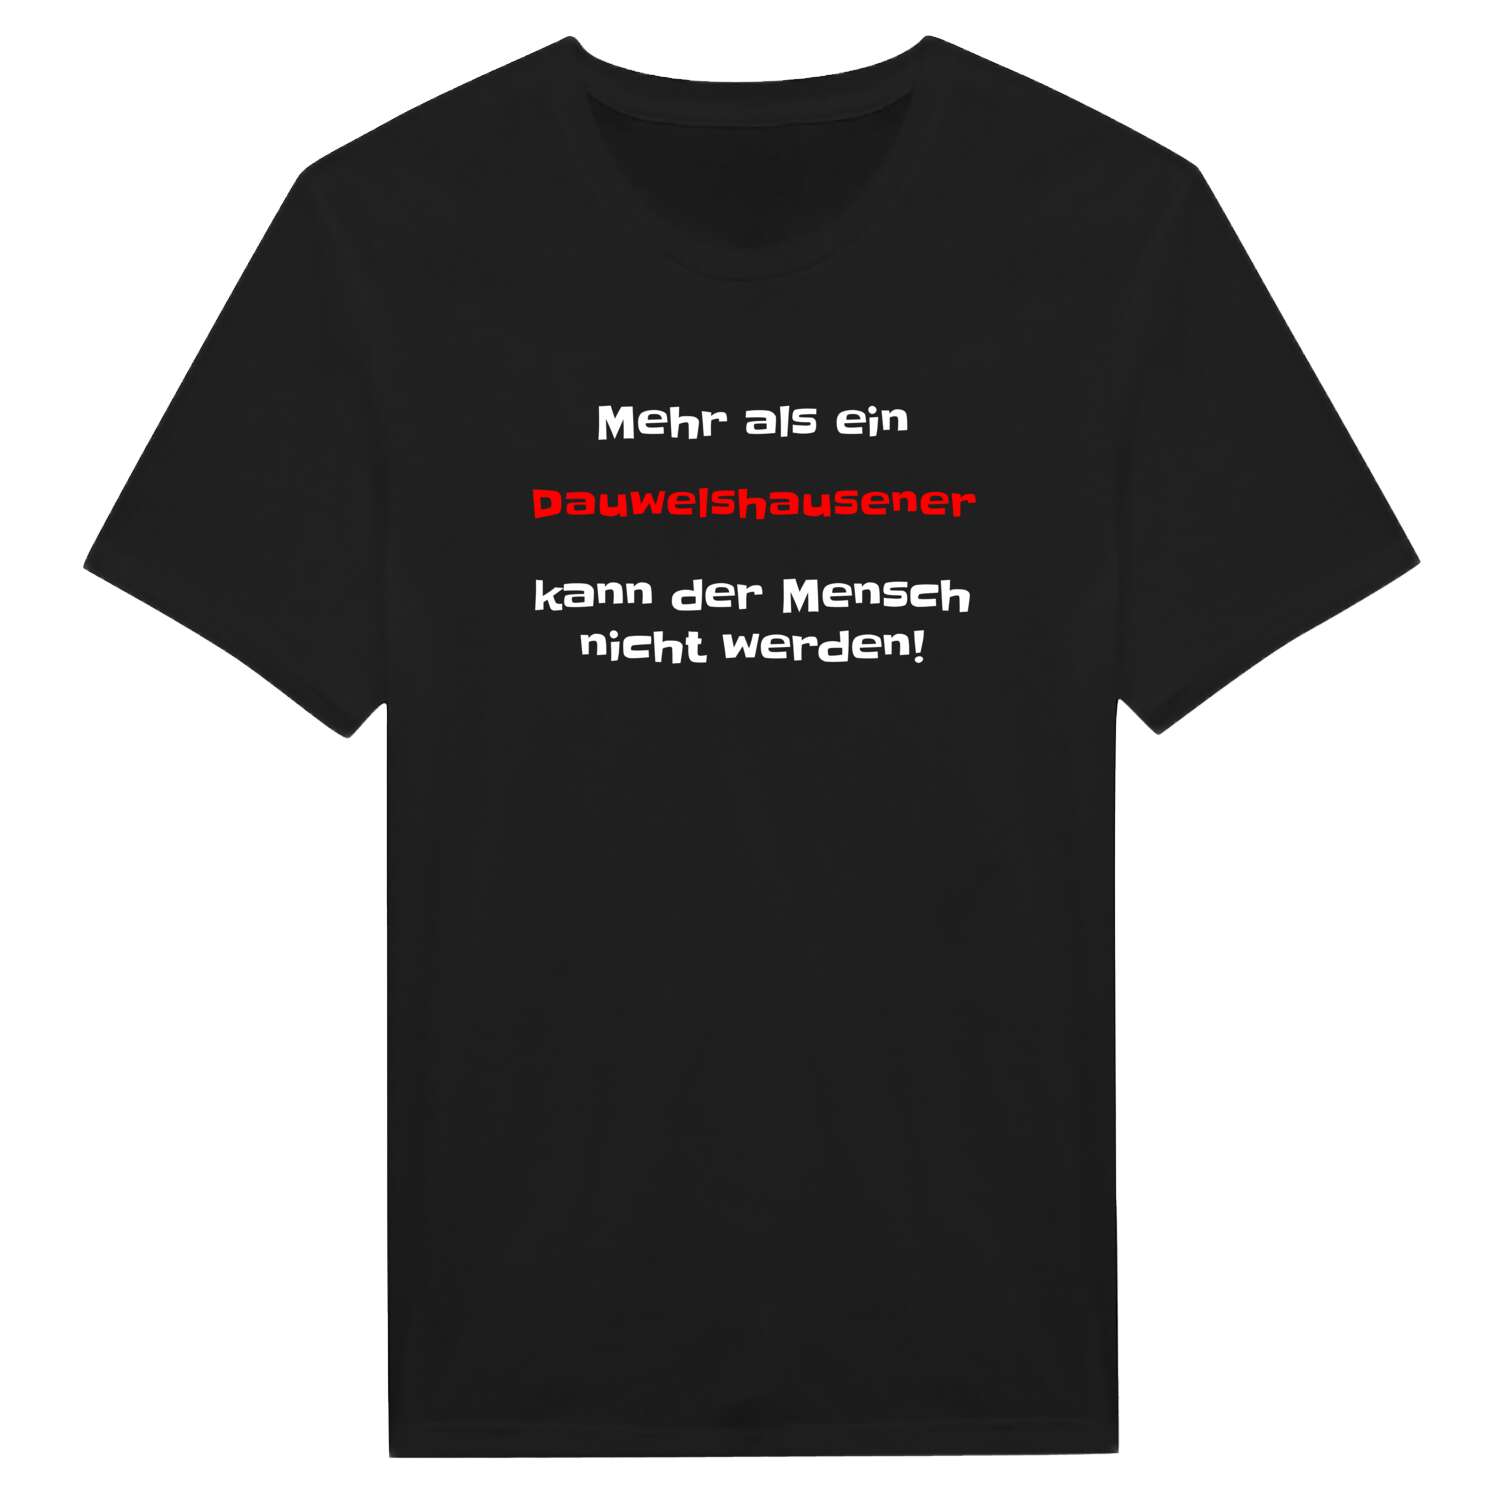 Dauwelshausen T-Shirt »Mehr als ein«